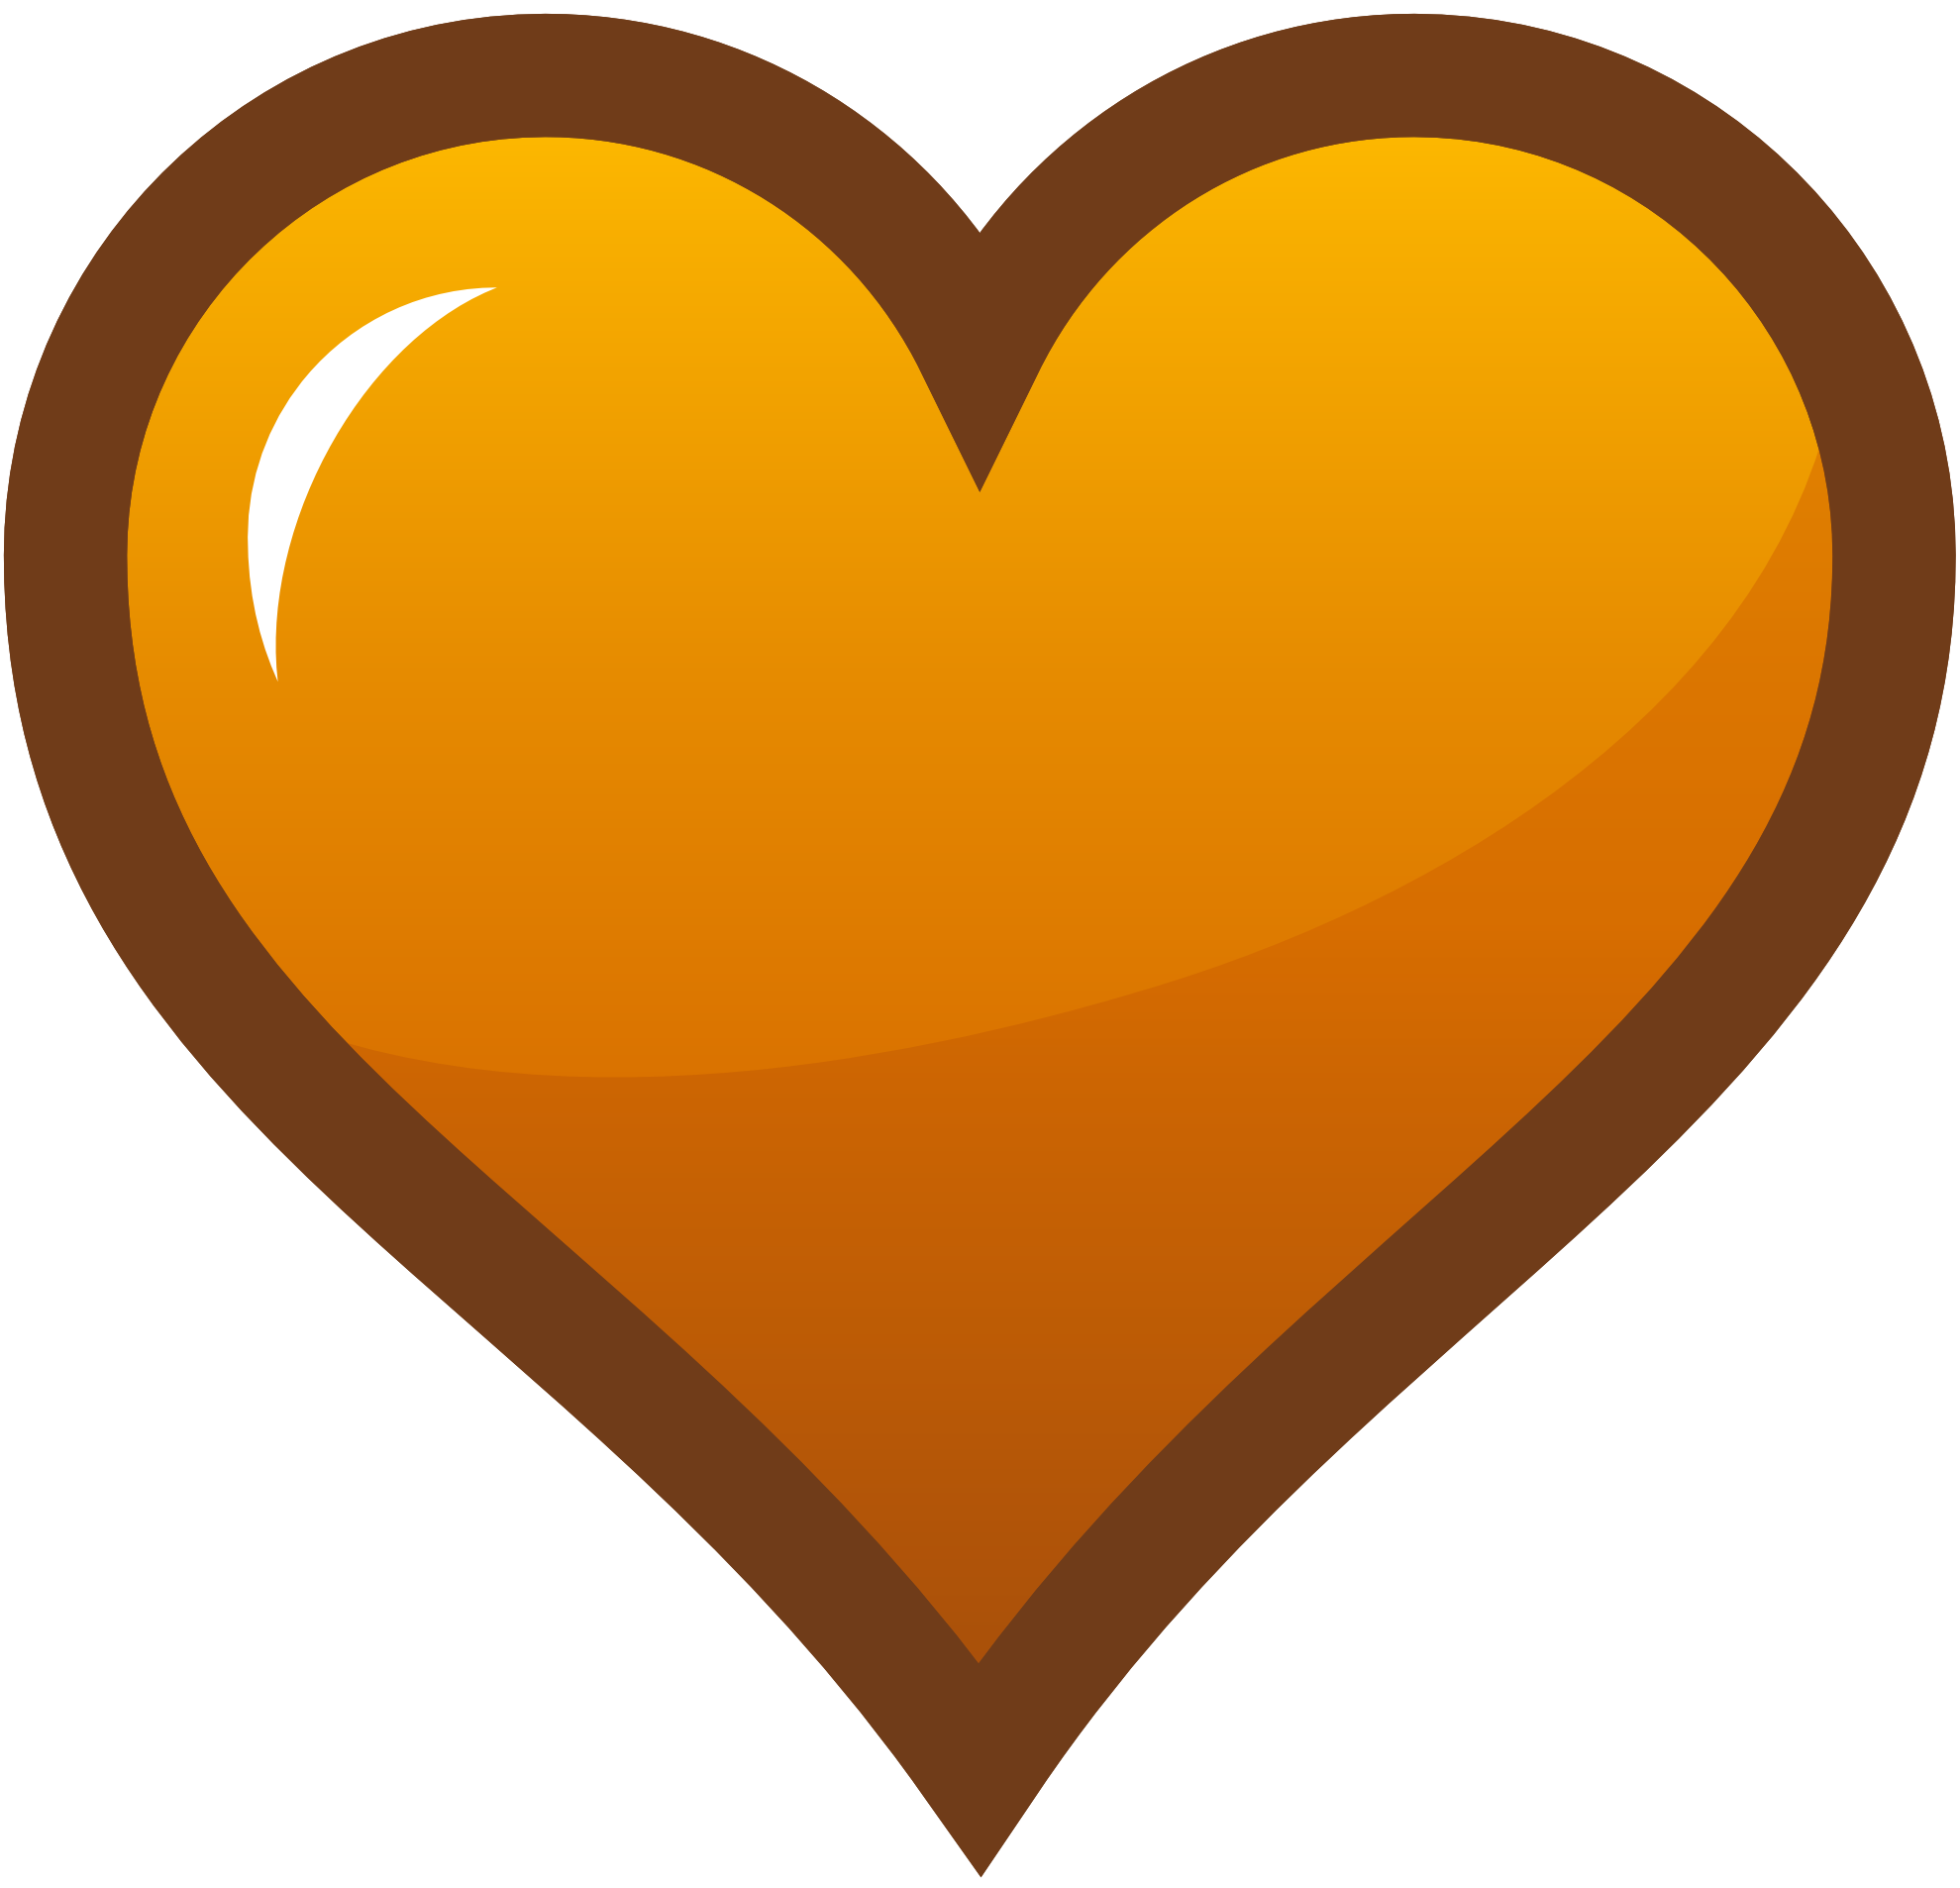 Orange clipart oragne. Heart free download best